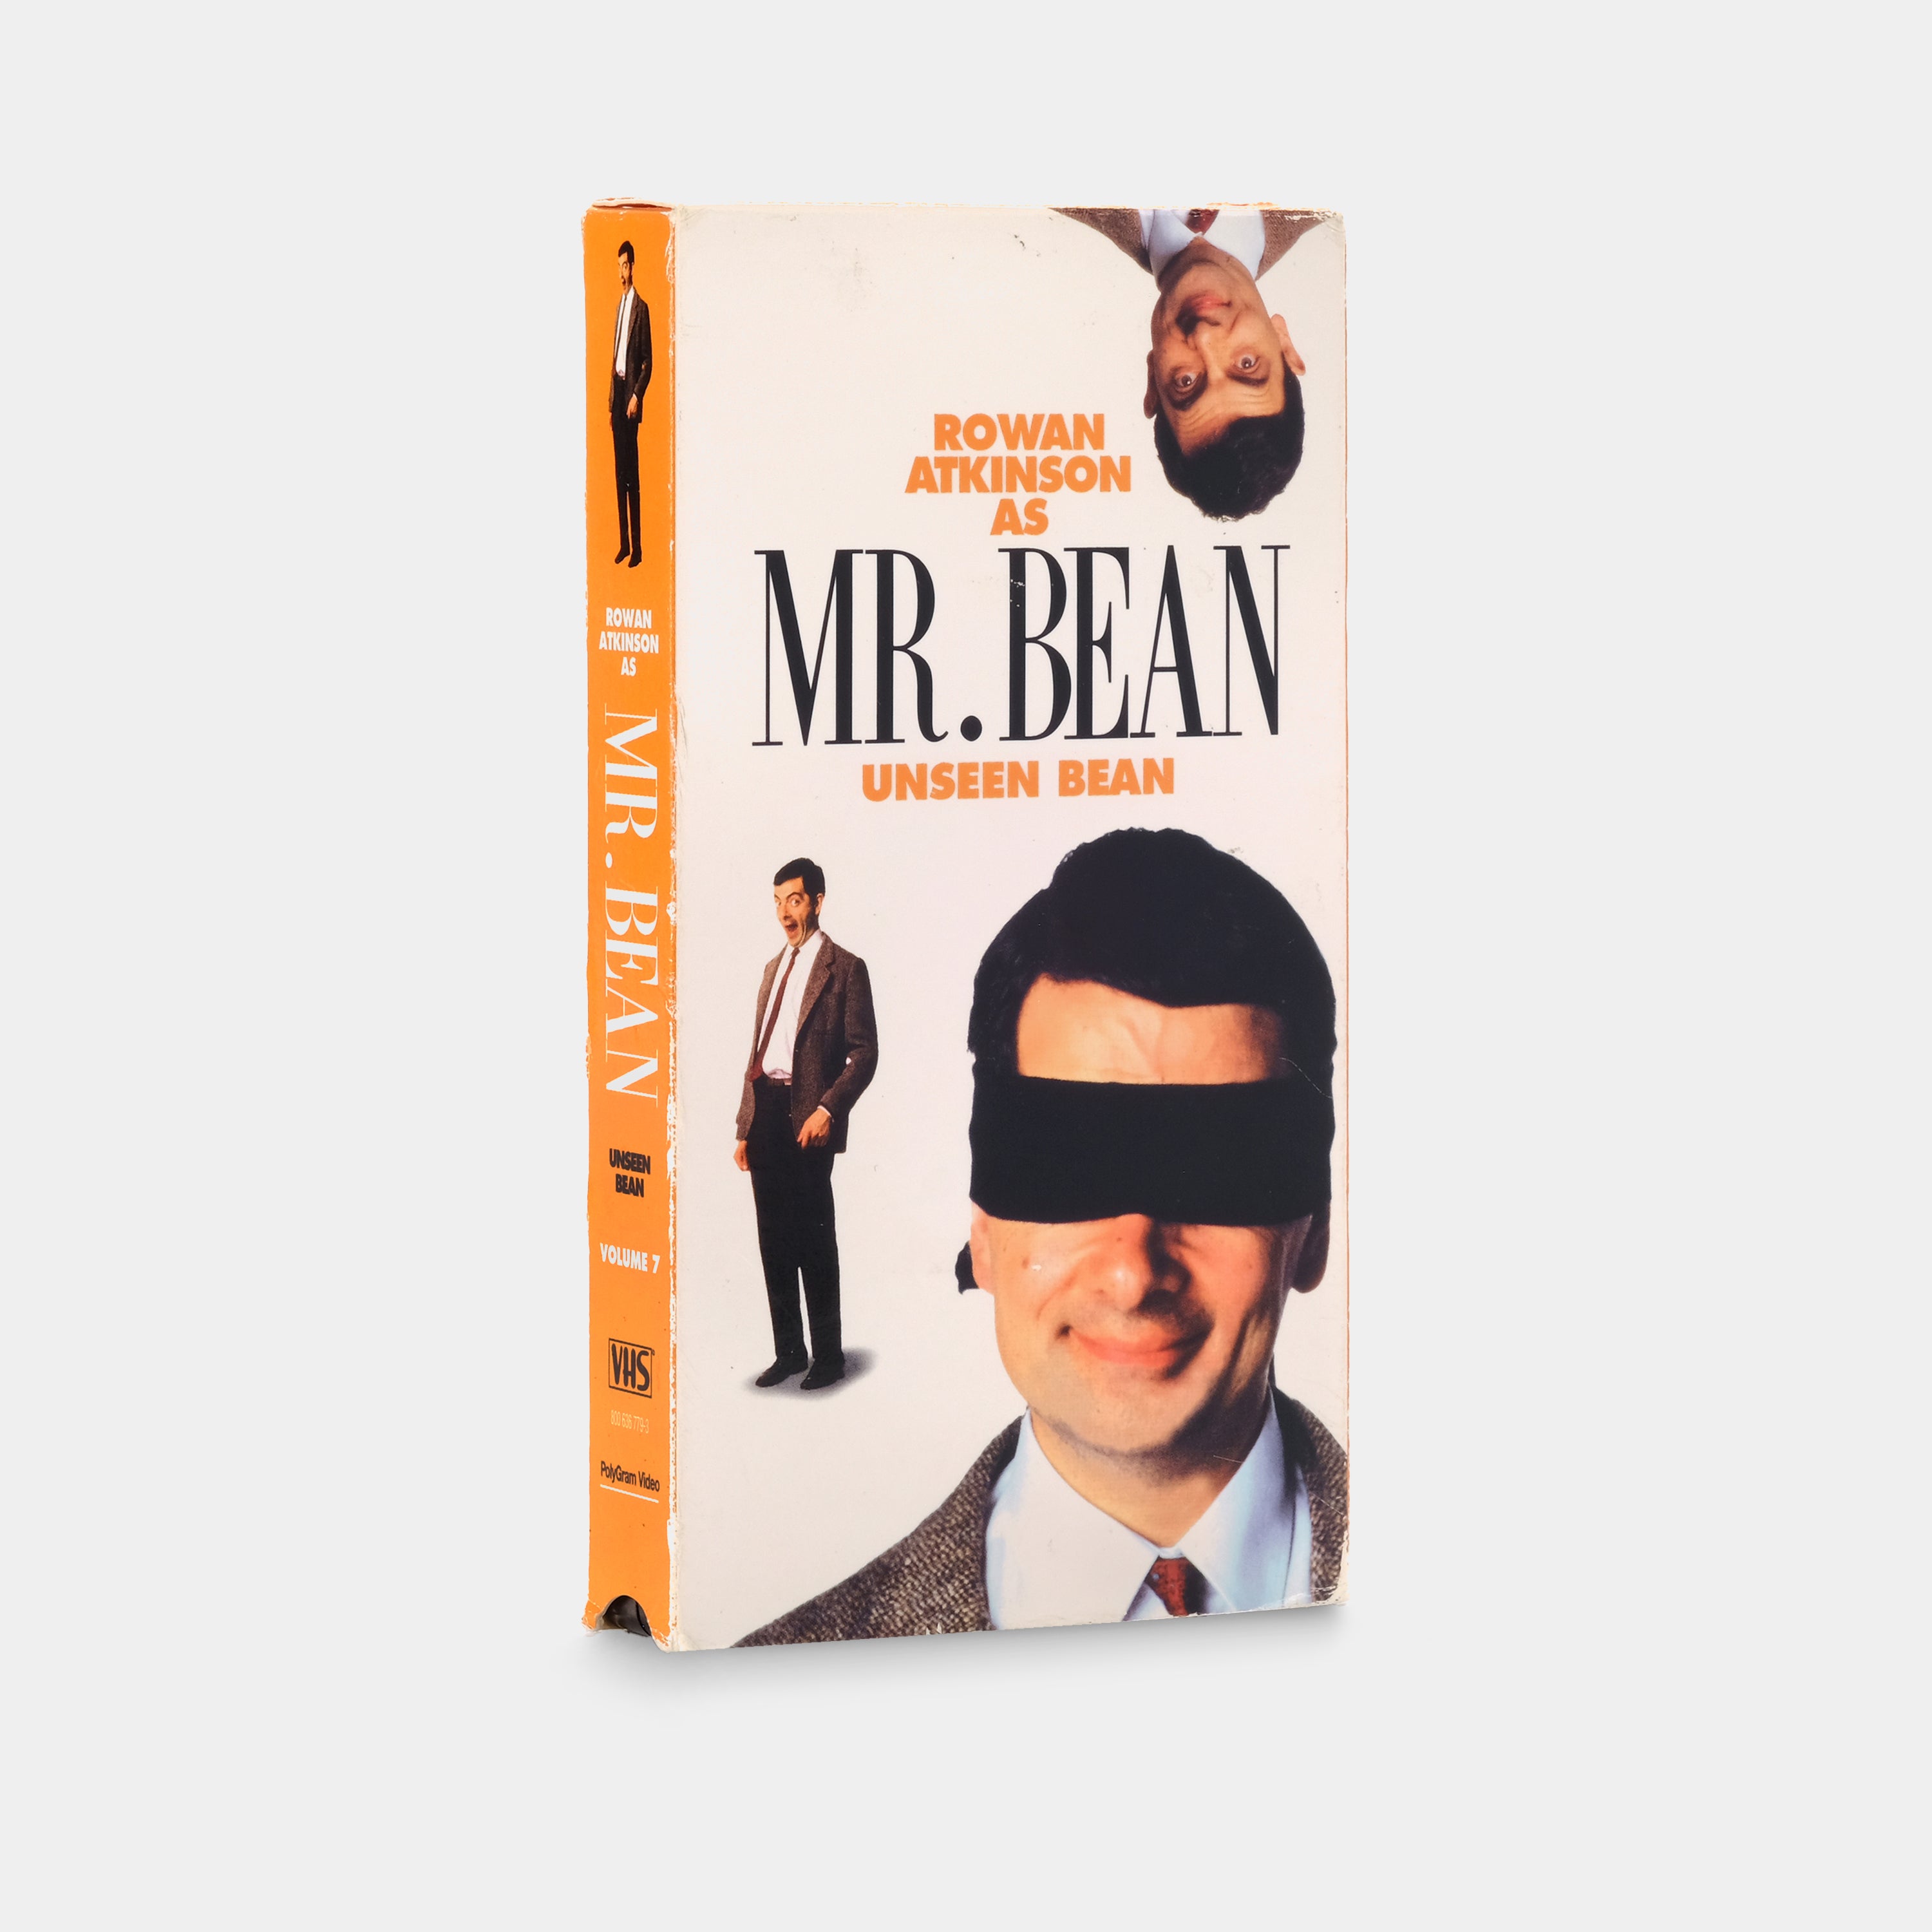 Mr. Bean: Unseen Bean Vol. 7 VHS Tape